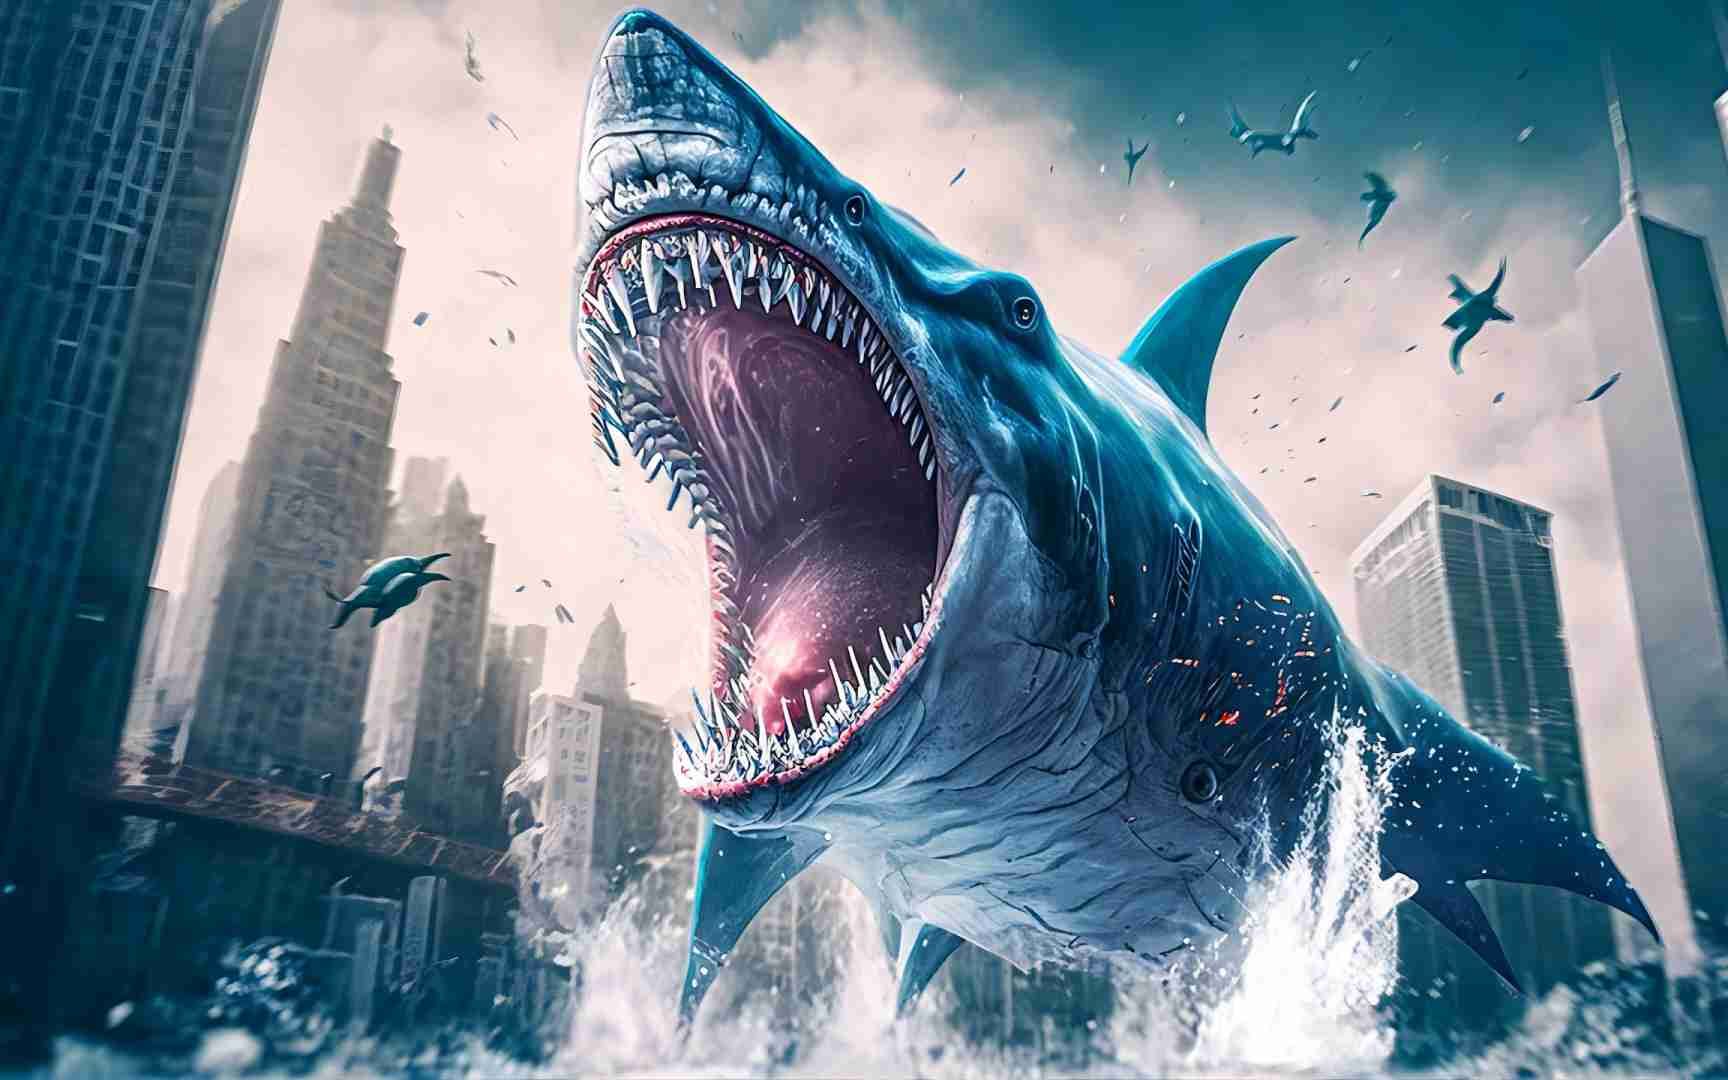 【星期三预告】吴京《巨齿鲨2》联手杰森·斯坦森,荷尔蒙爆棚大战史前